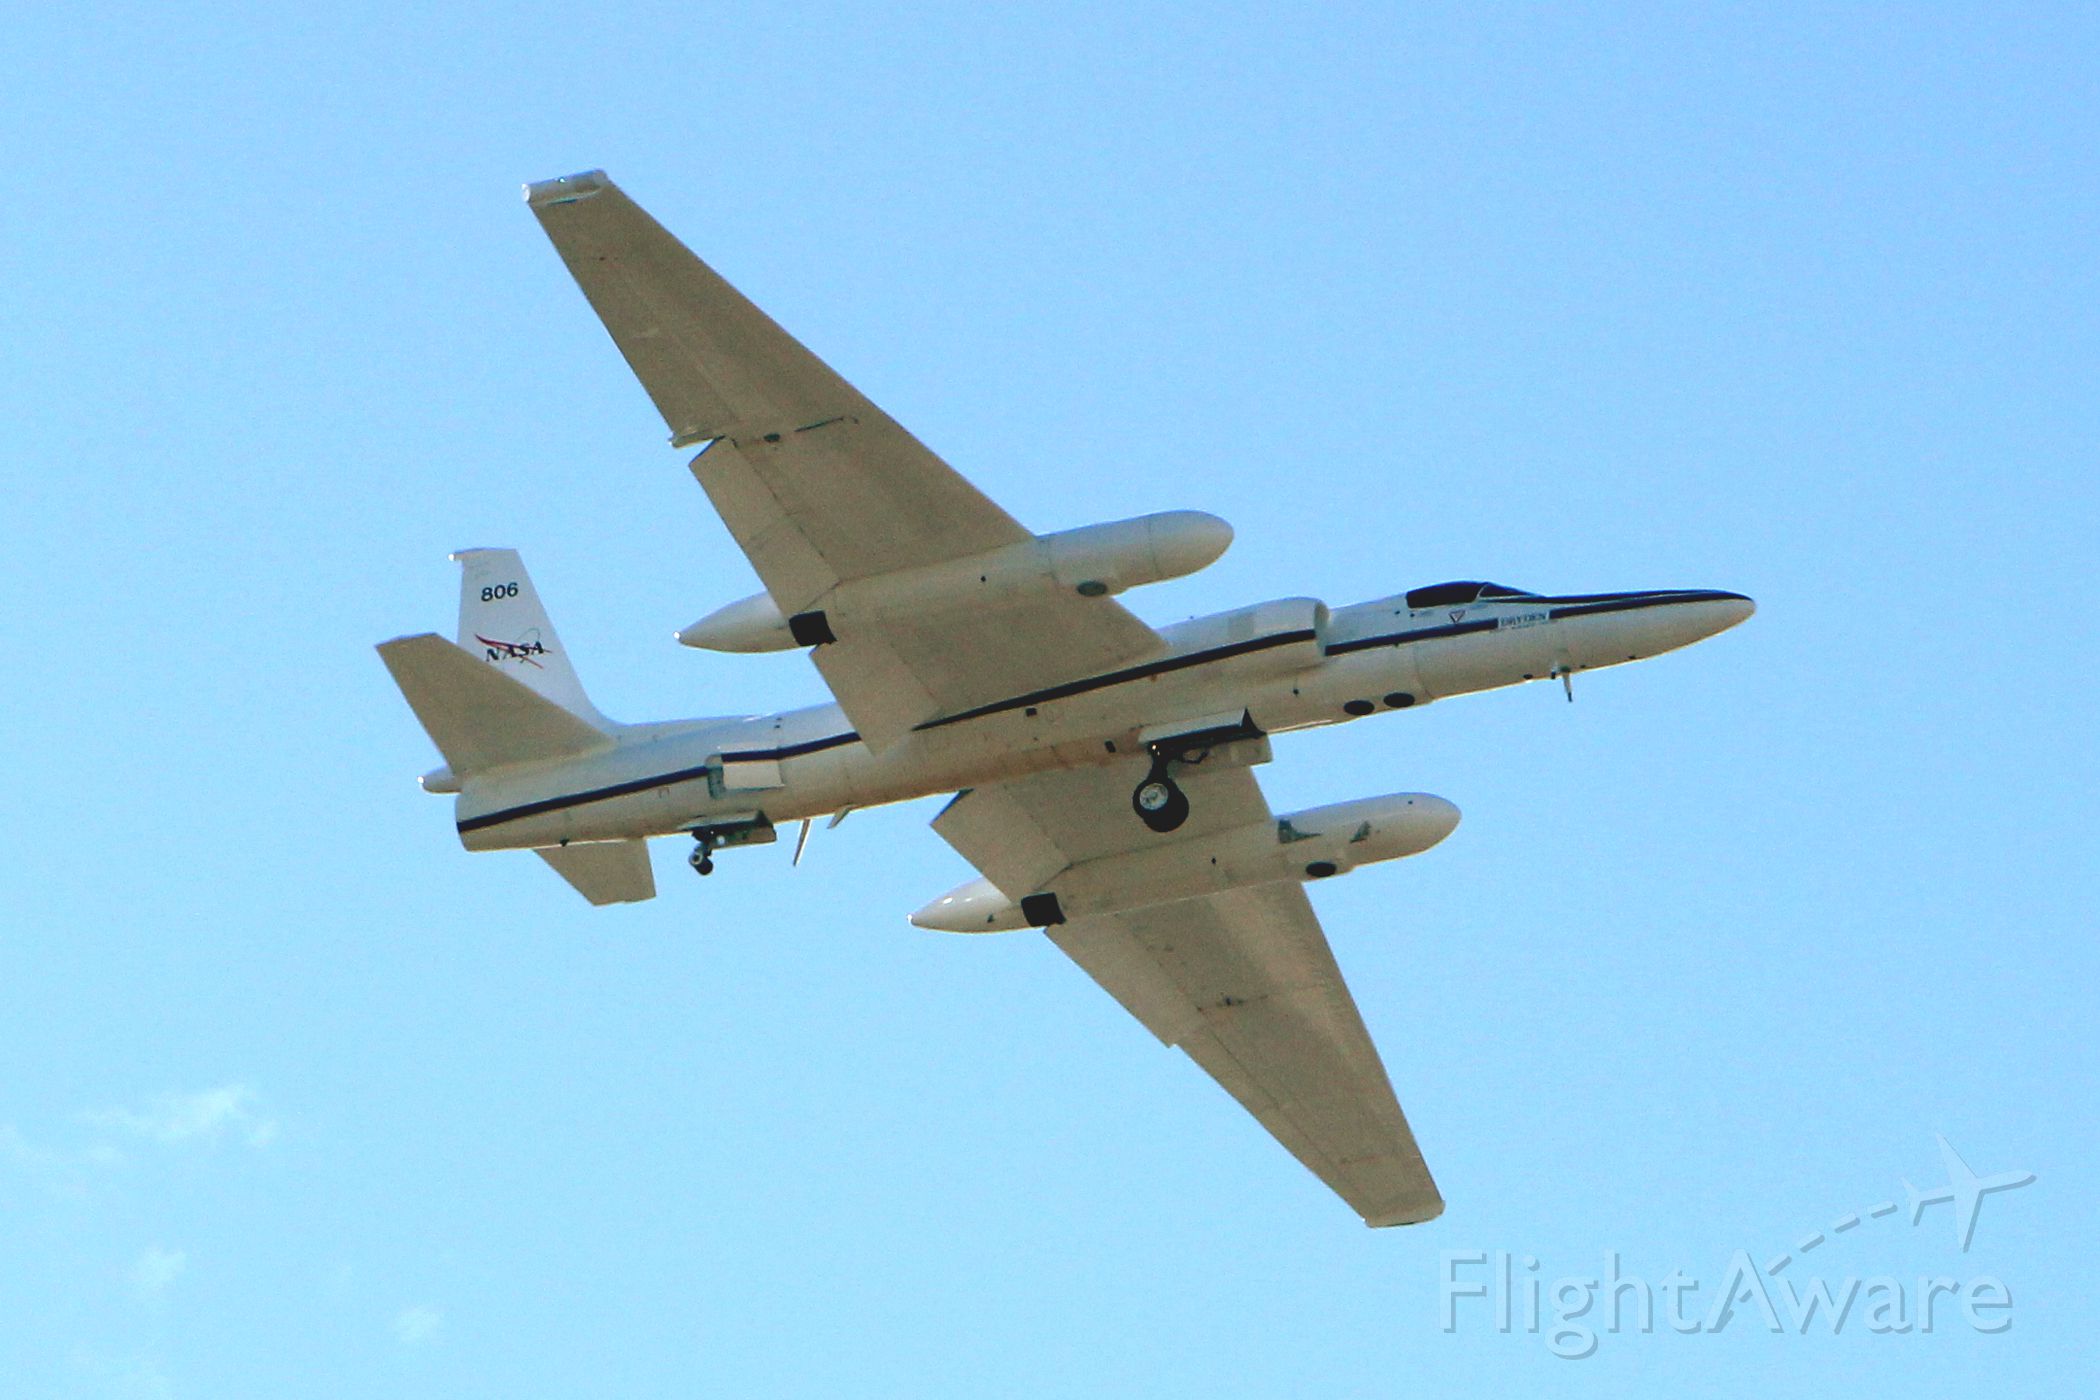 Lockheed ER-2 (NASA806) - Fly-by of NASA806 ER-2 at Moffett Federal Airfield 1/25/2014.